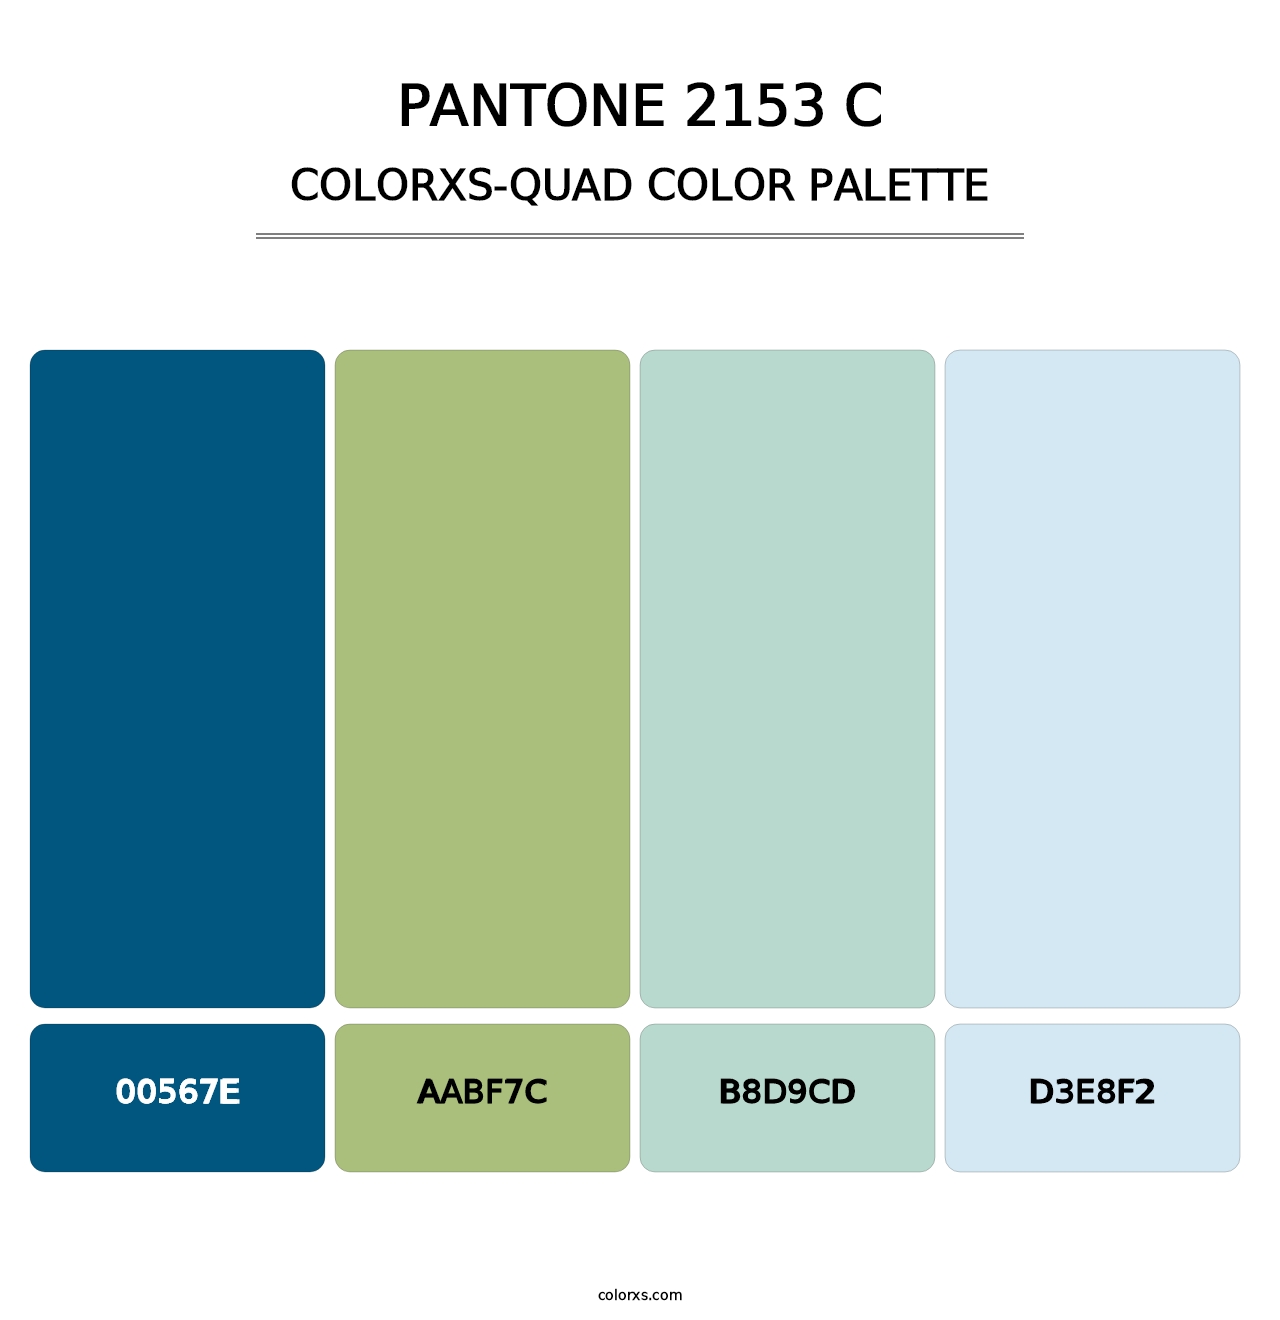 PANTONE 2153 C - Colorxs Quad Palette